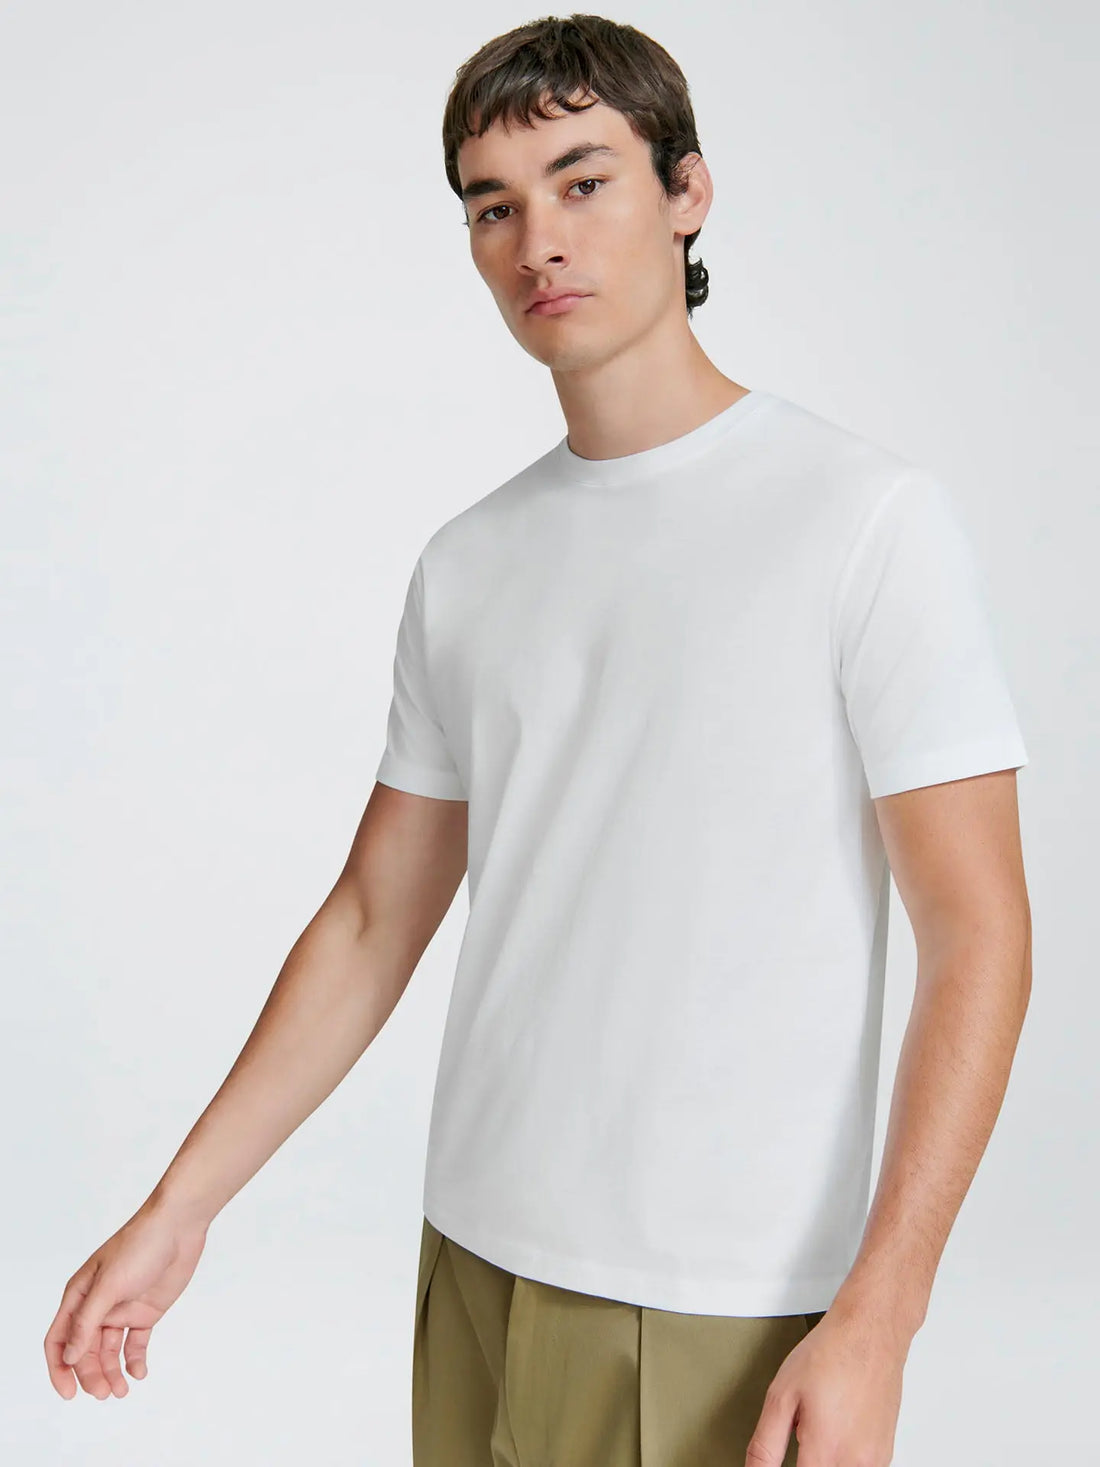 Crew Neck T Shirt- White - Eames NW